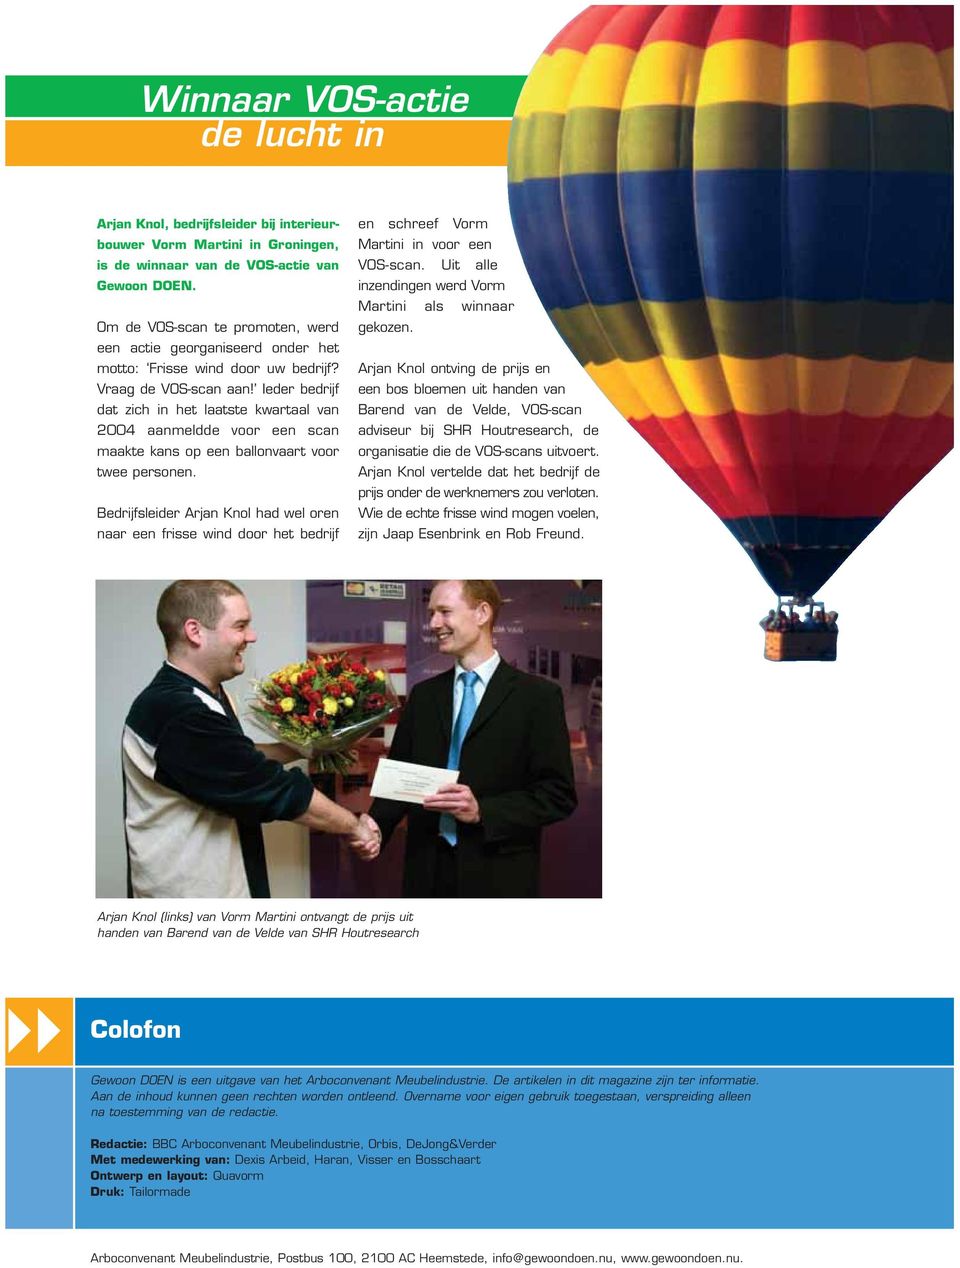 Ieder bedrijf dat zich in het laatste kwartaal van 2004 aanmeldde voor een scan maakte kans op een ballonvaart voor twee personen.